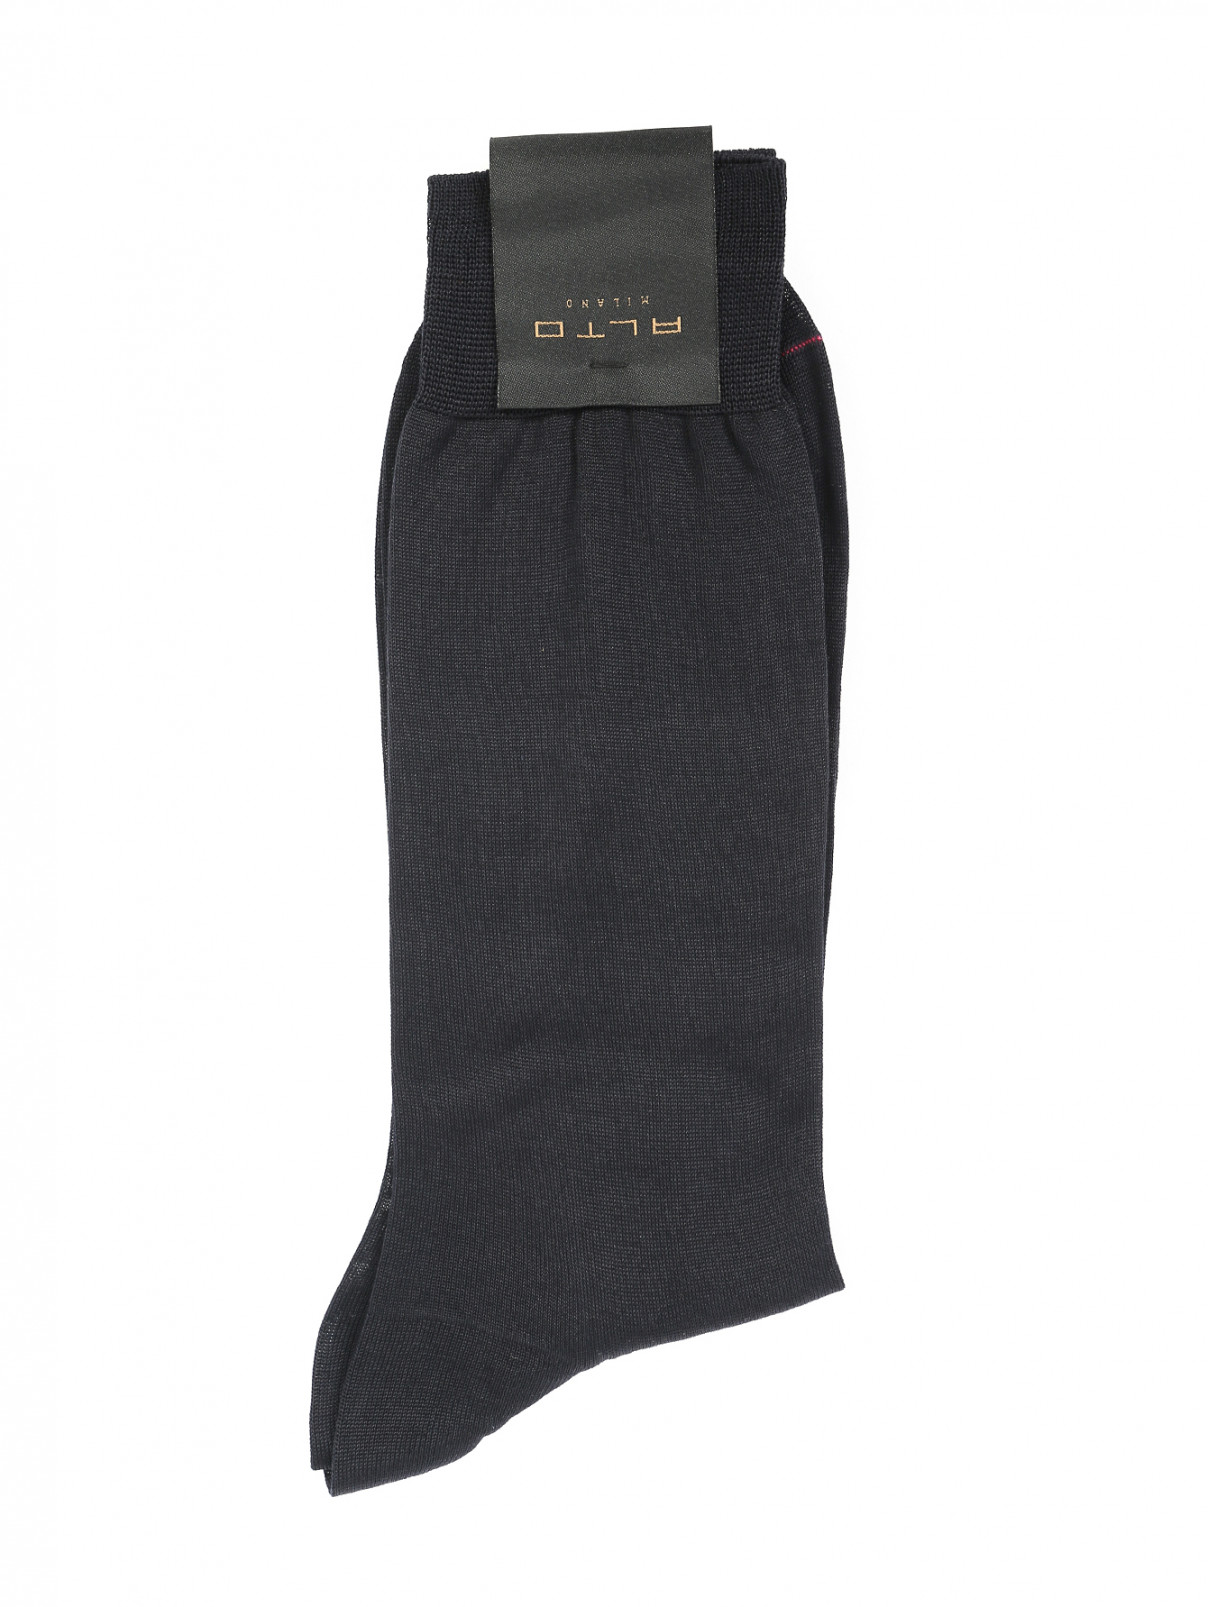 Носки из хлопка Peekaboo  –  Общий вид  – Цвет:  Черный